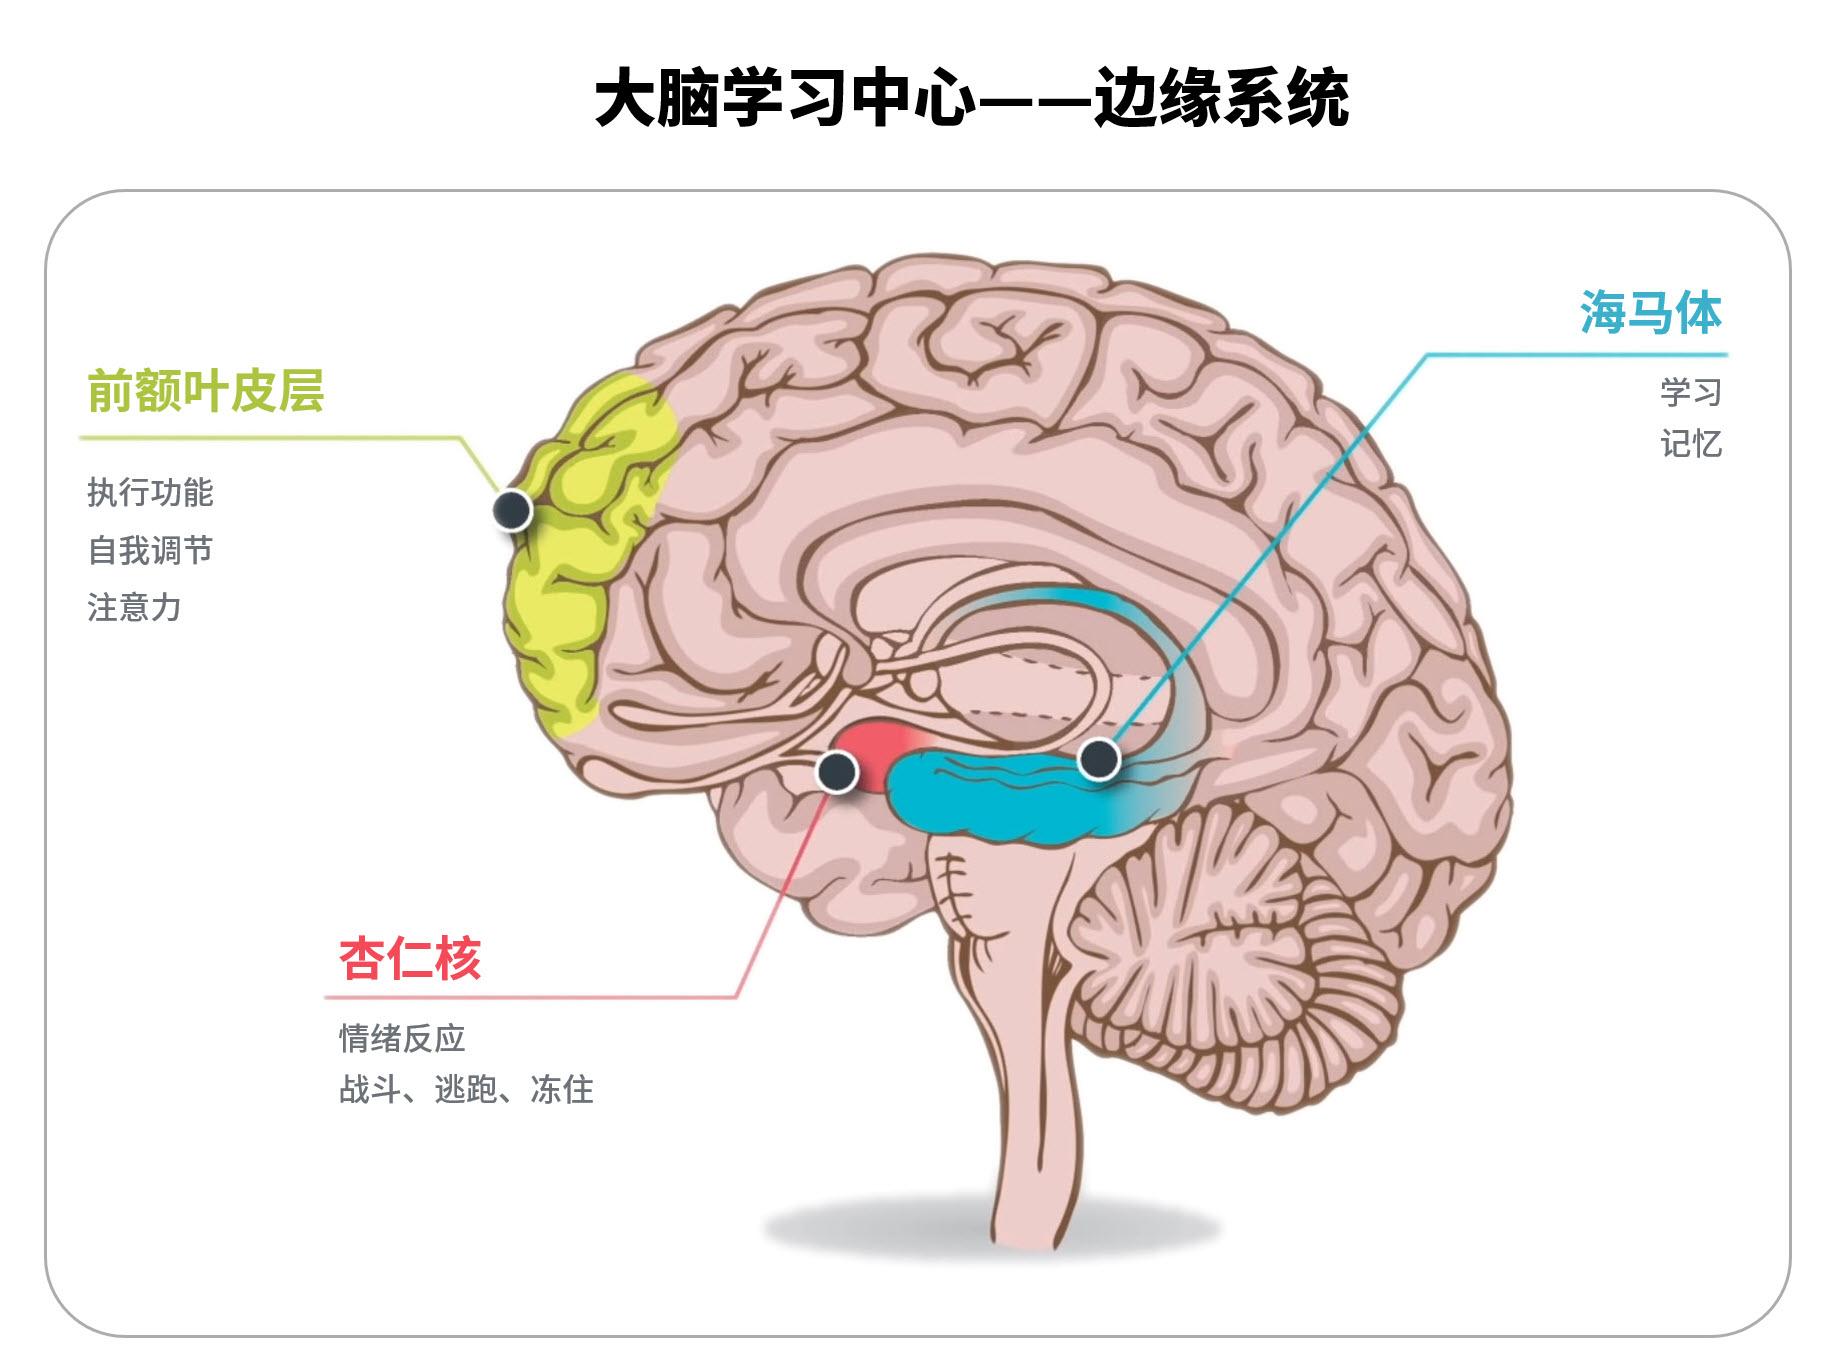 前额叶皮层,海马体和杏仁核是大脑边缘系统的关键部分